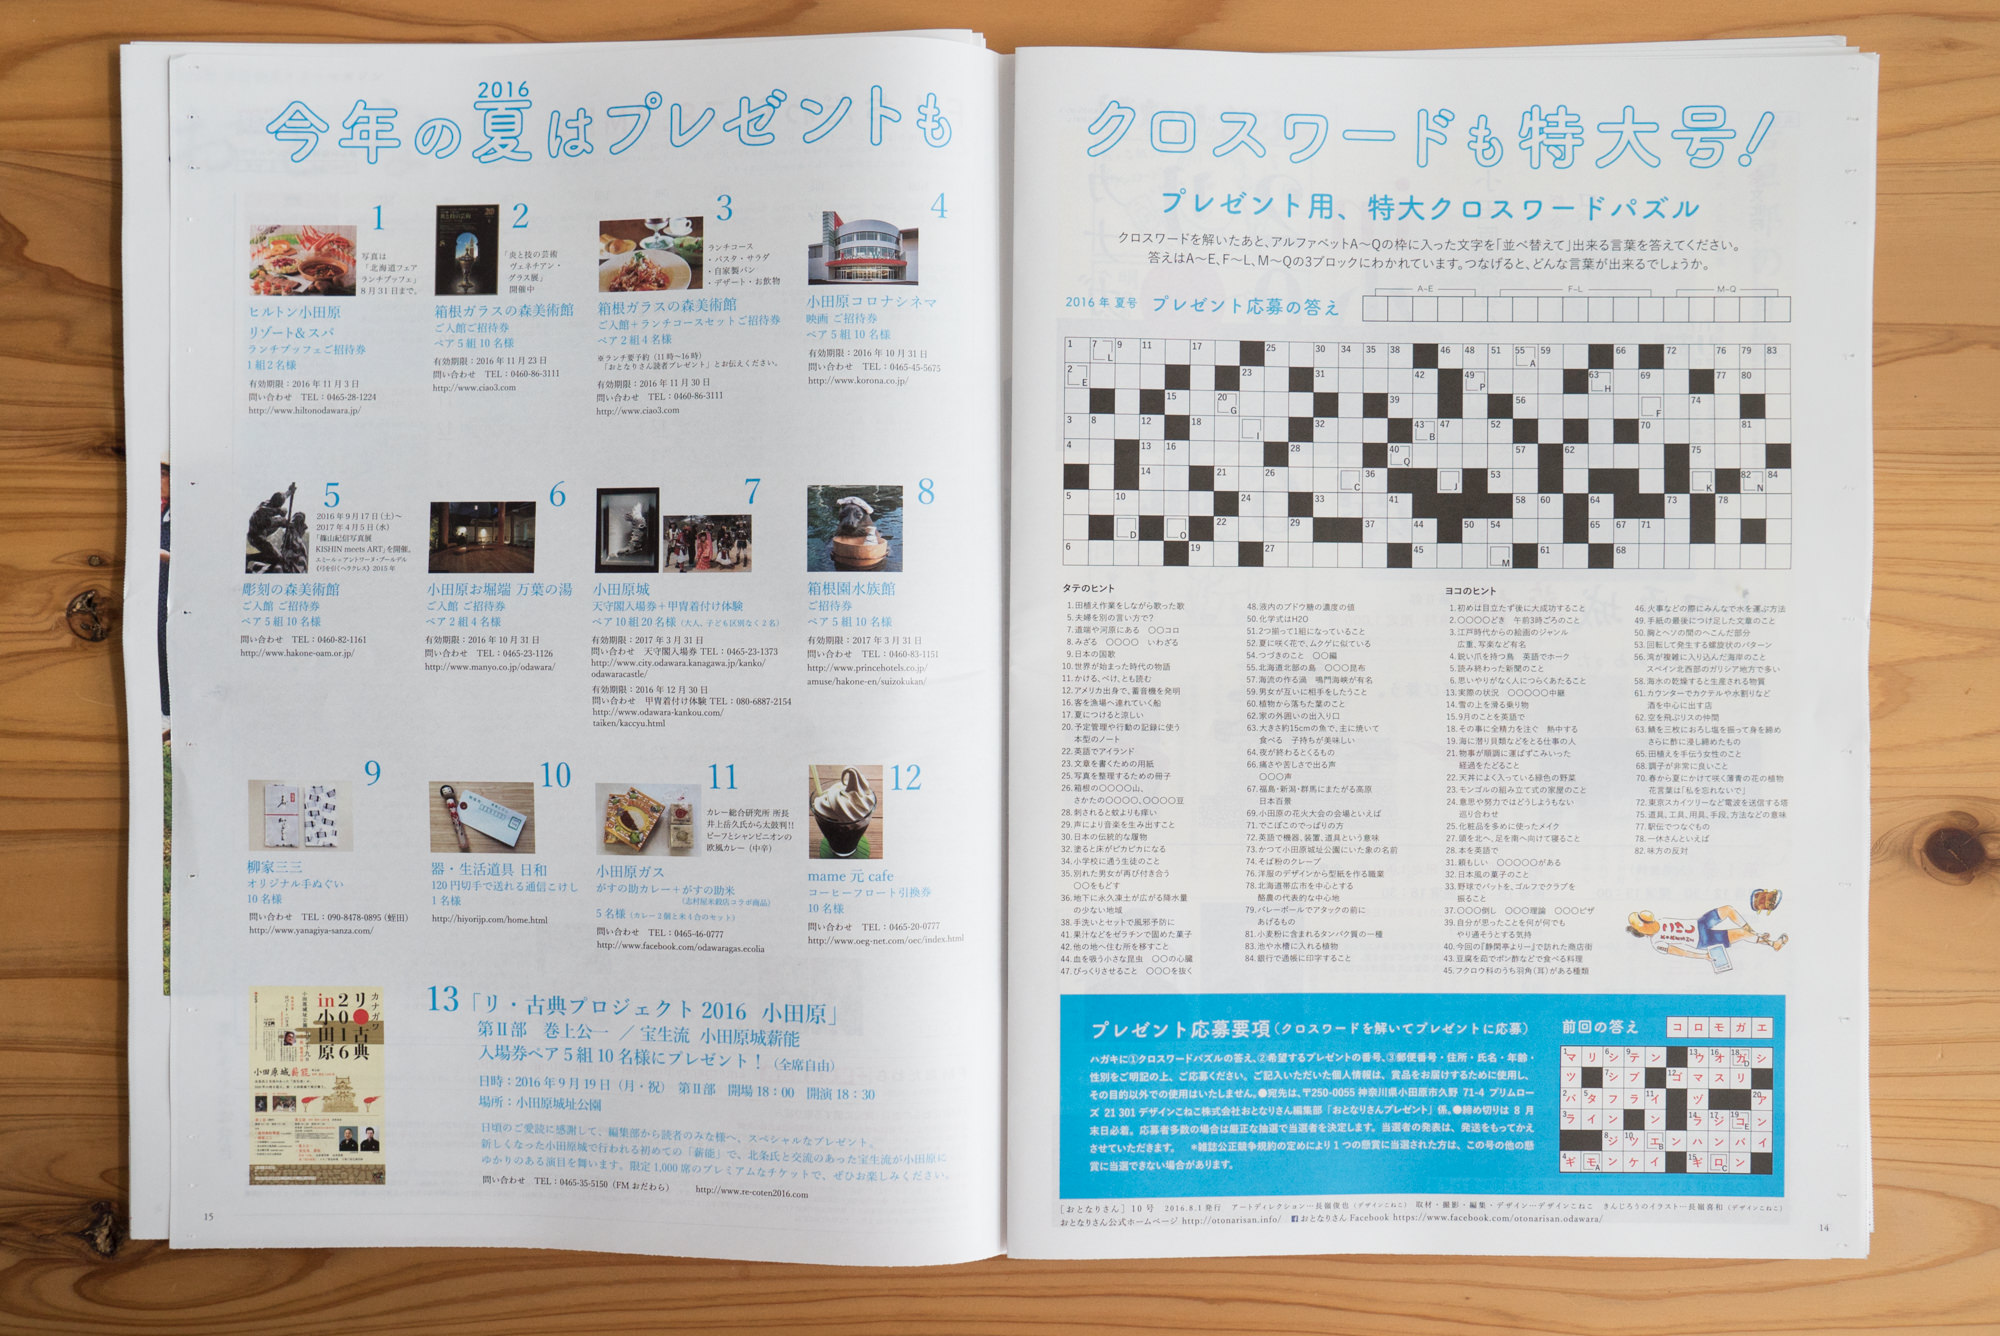 デザインこねこさんが、季刊発行されている小田原回覧板系フリーマガジン「おとなりさん」vol.10